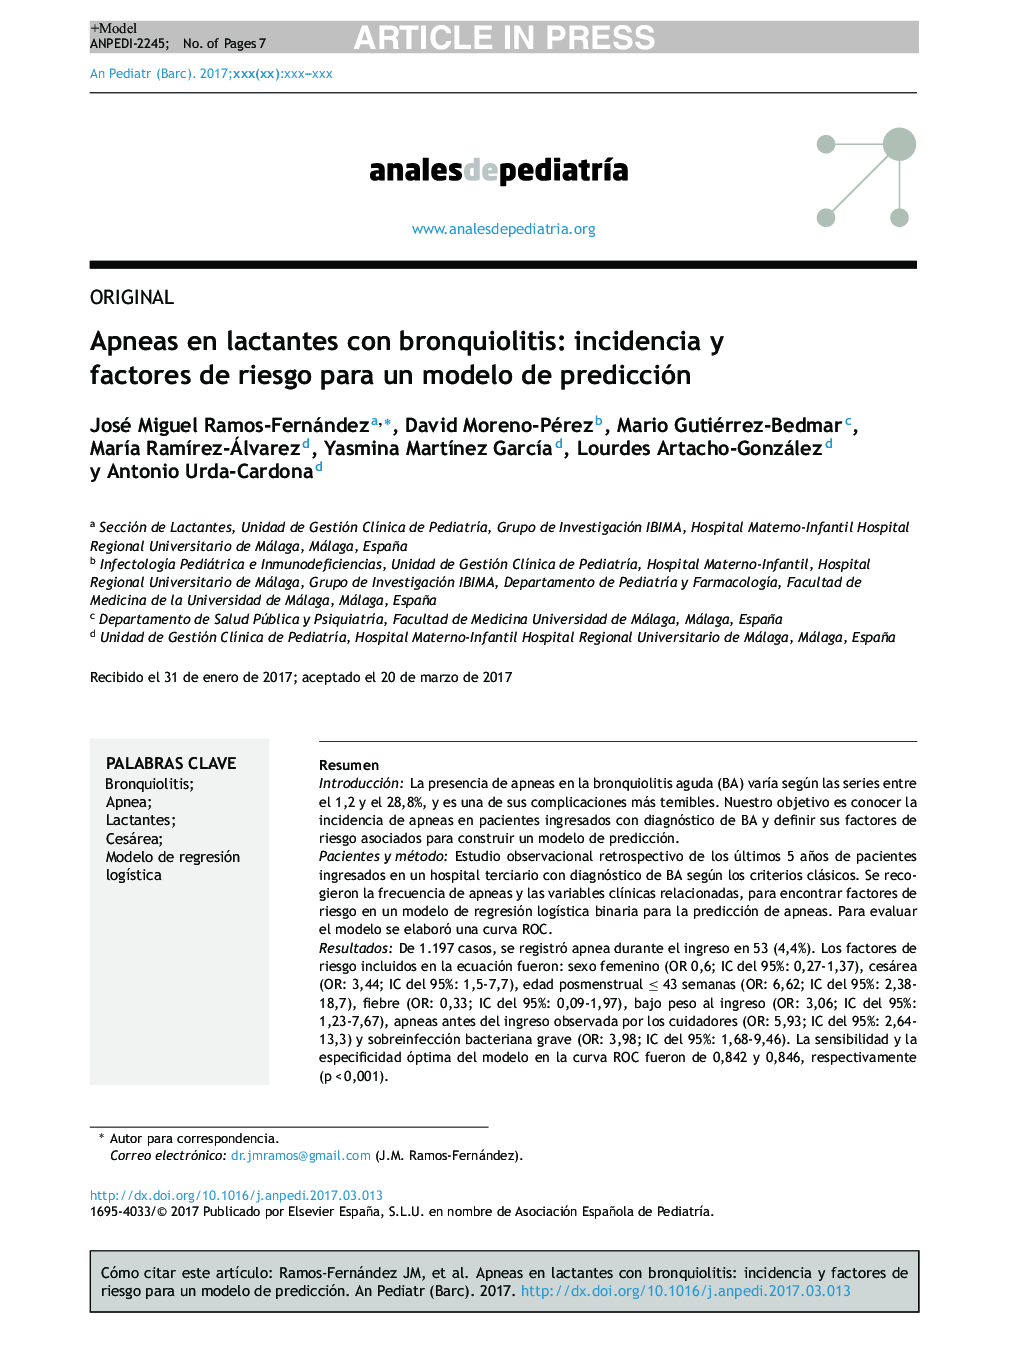 Apneas en lactantes con bronquiolitis: incidencia y factores de riesgo para un modelo de predicción